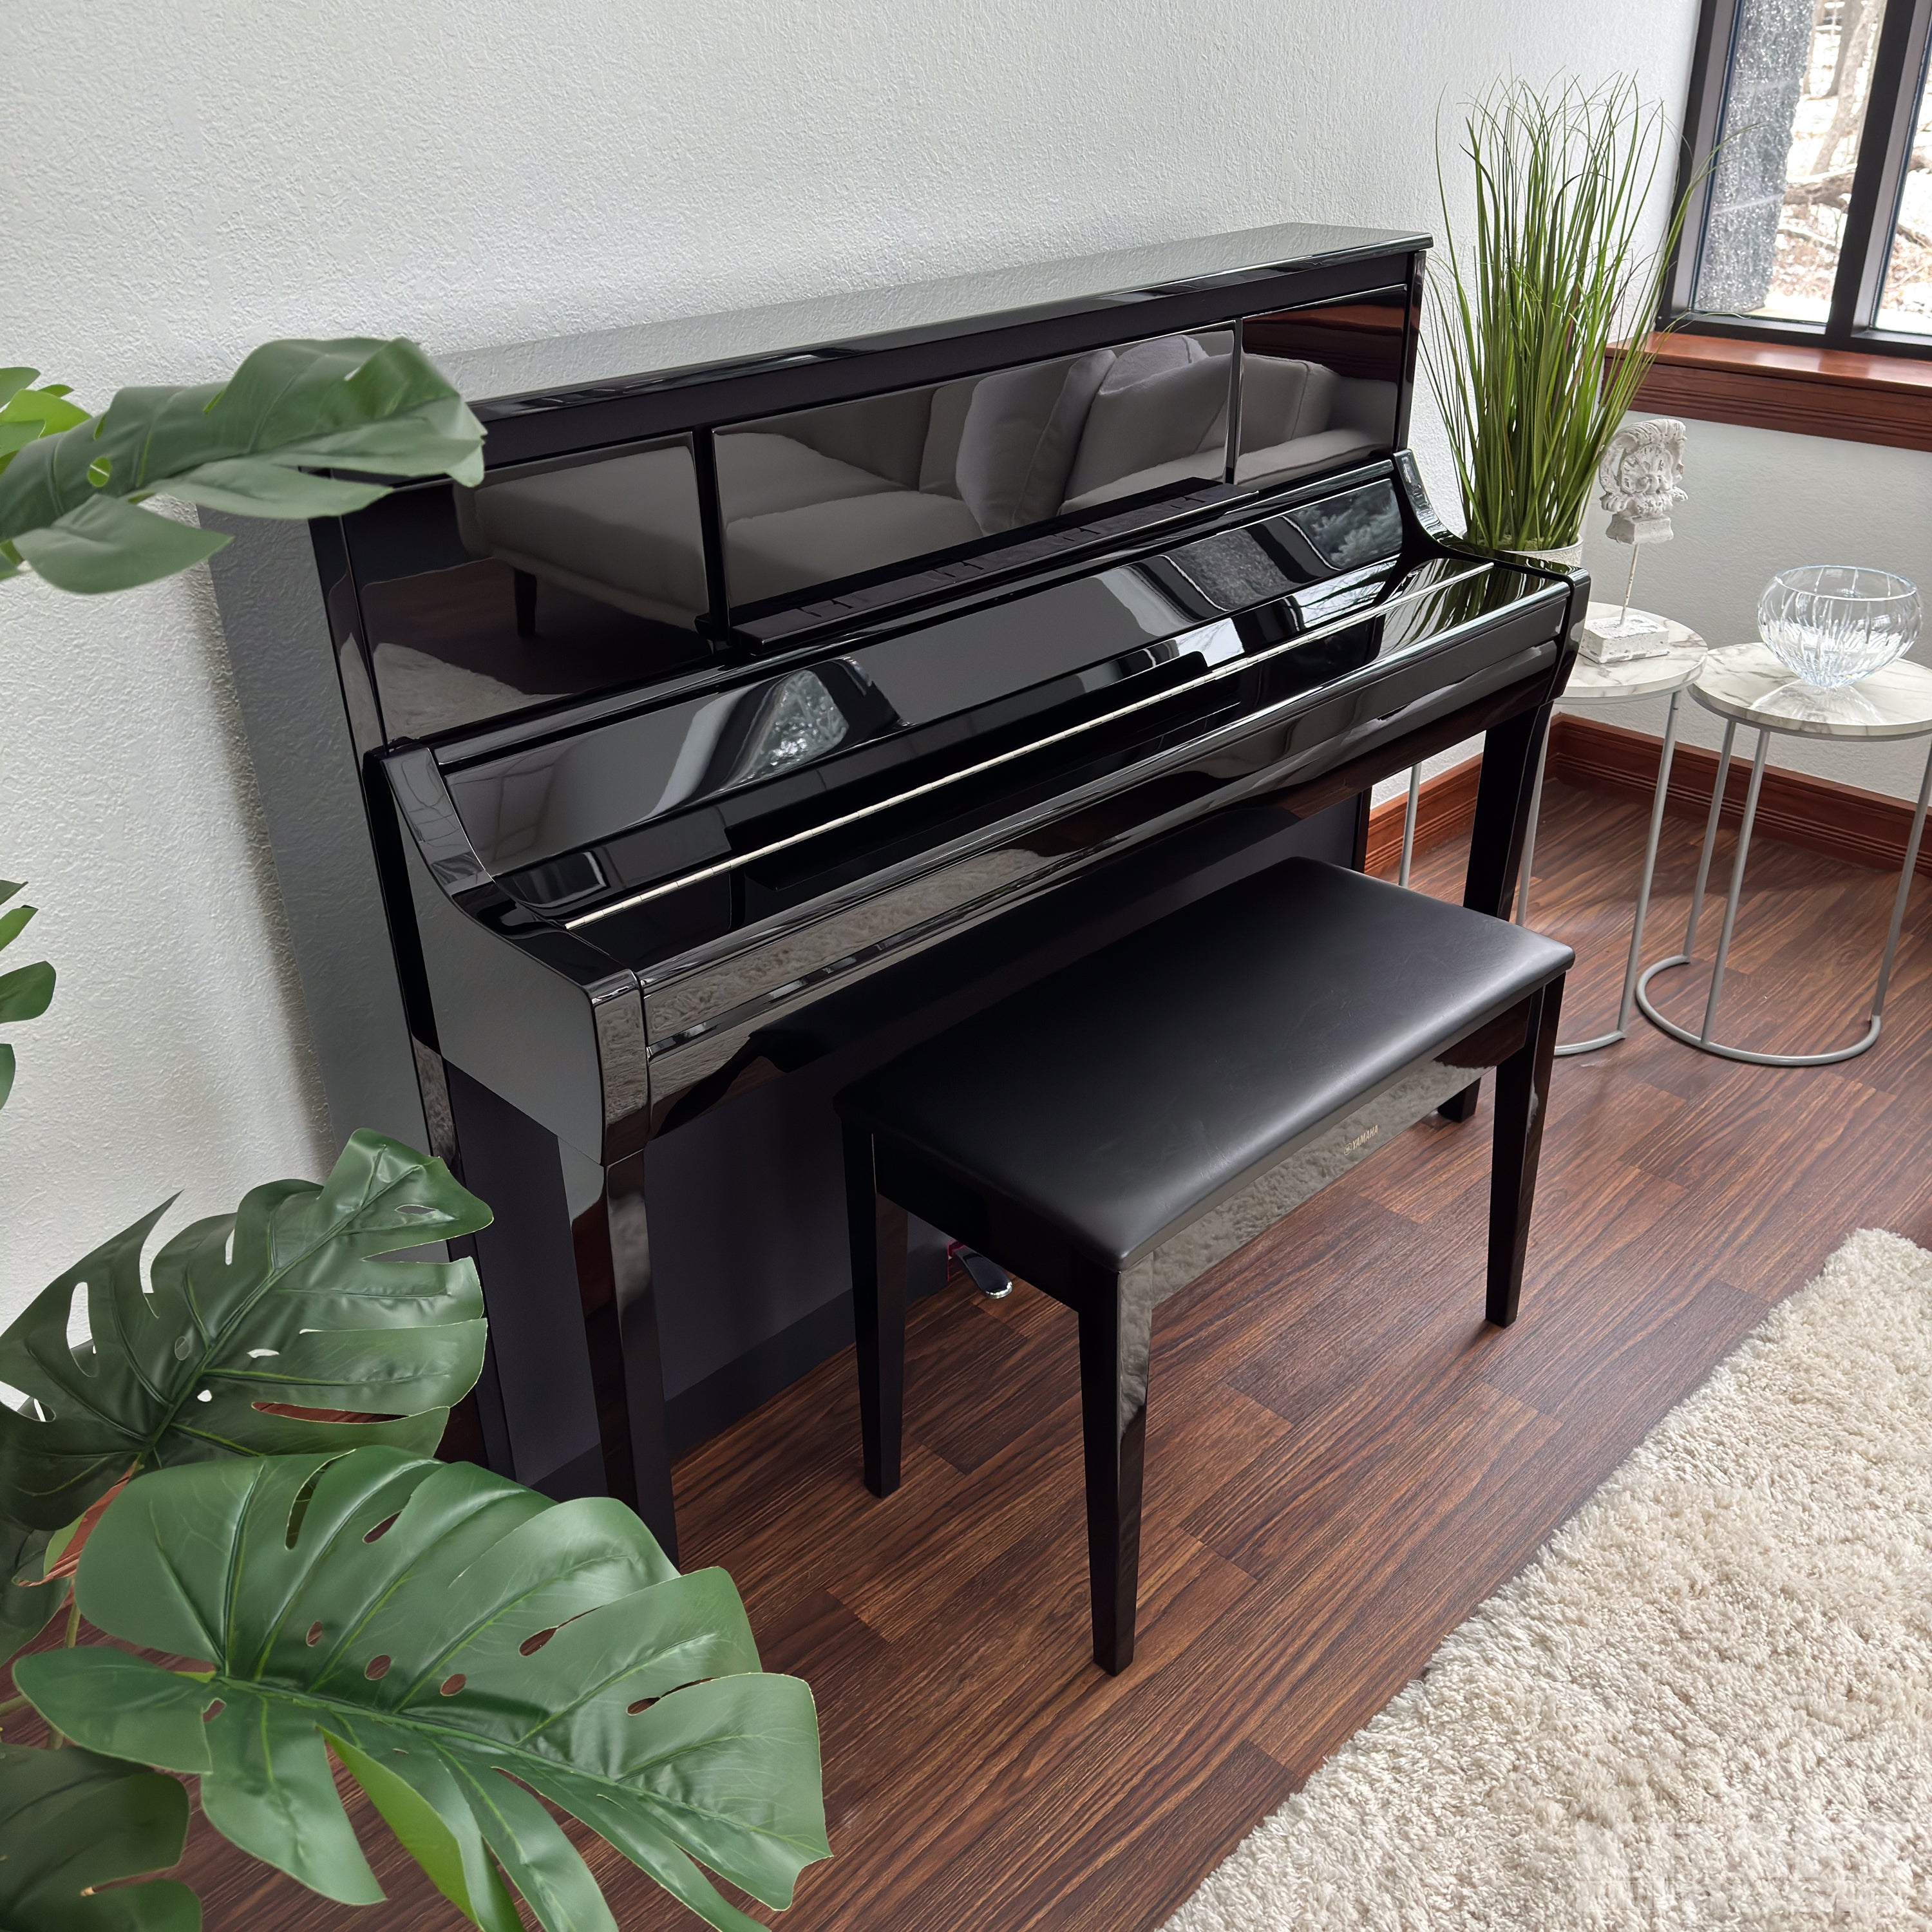 Yamaha Clavinova CSP-295 Digital Piano - Polished Ebony -  in a stylish living room with key cover closed